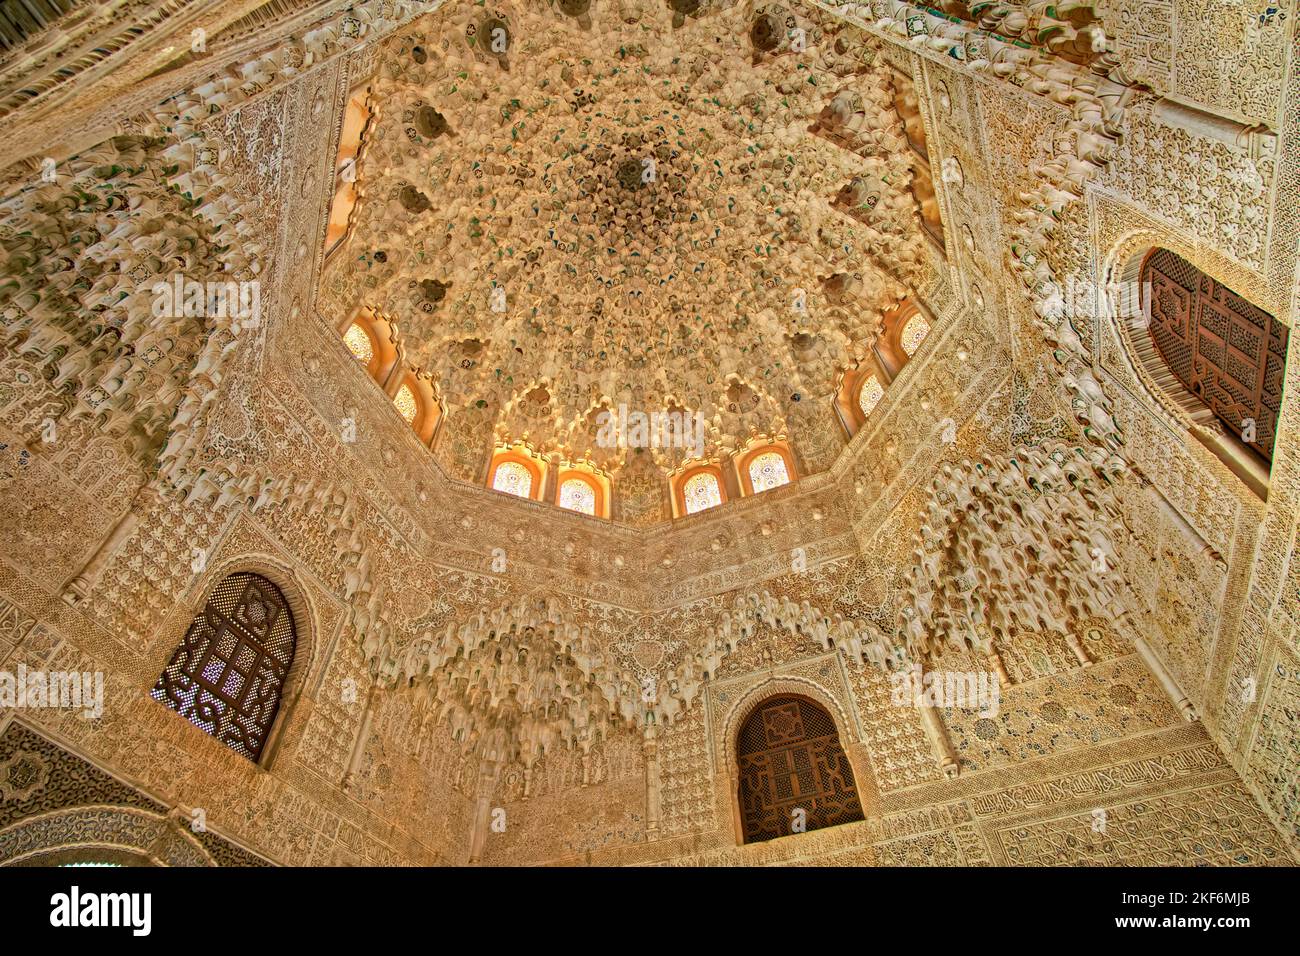 Dettaglio architettonico degli edifici del palazzo dell'Alhambra a Granada, Spagna. Foto Stock